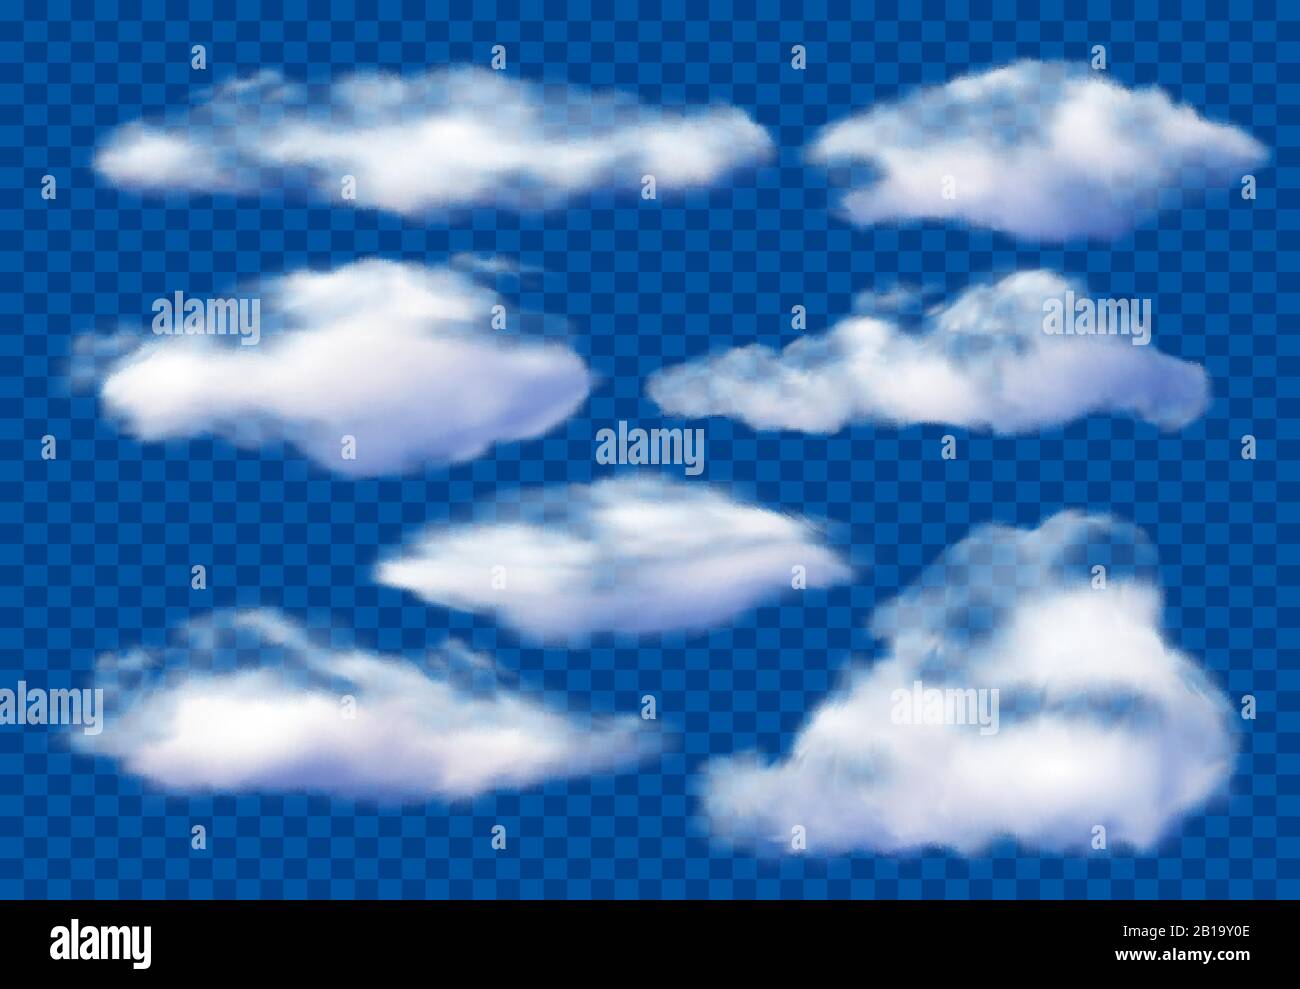 Realistische Wolken. Bewölkter Himmel, flauschige Wolke und weiße Dampfwolken isoliertes 3D-Vektorbildungssatz Stock Vektor